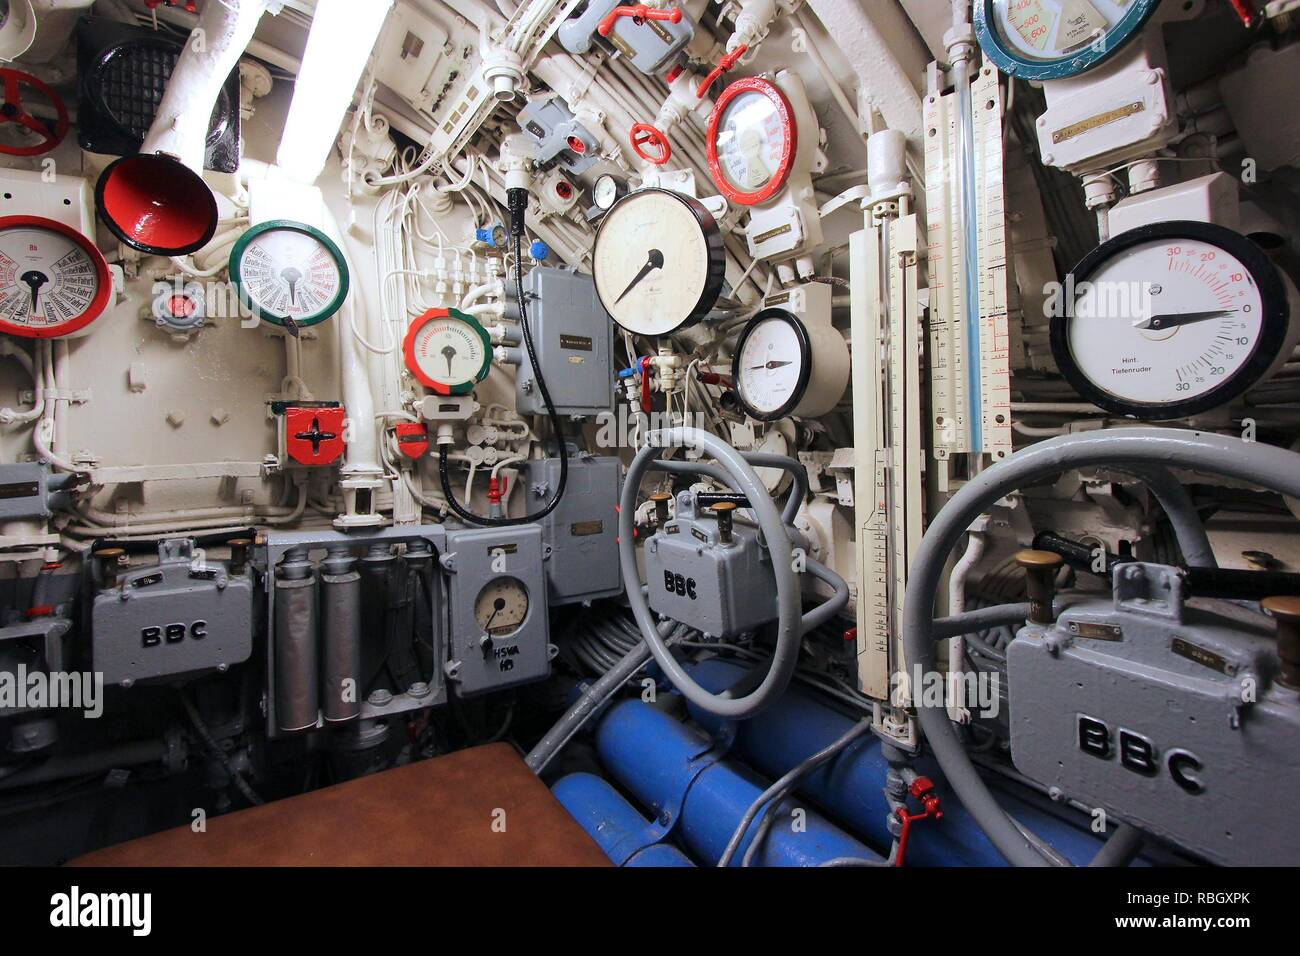 LABOE, Germania - 30 agosto 2014: Interno del sommergibile tedesco U-995 (museo nave) in Laboe. È il solo tipo di superstite VII sottomarino al mondo. Foto Stock